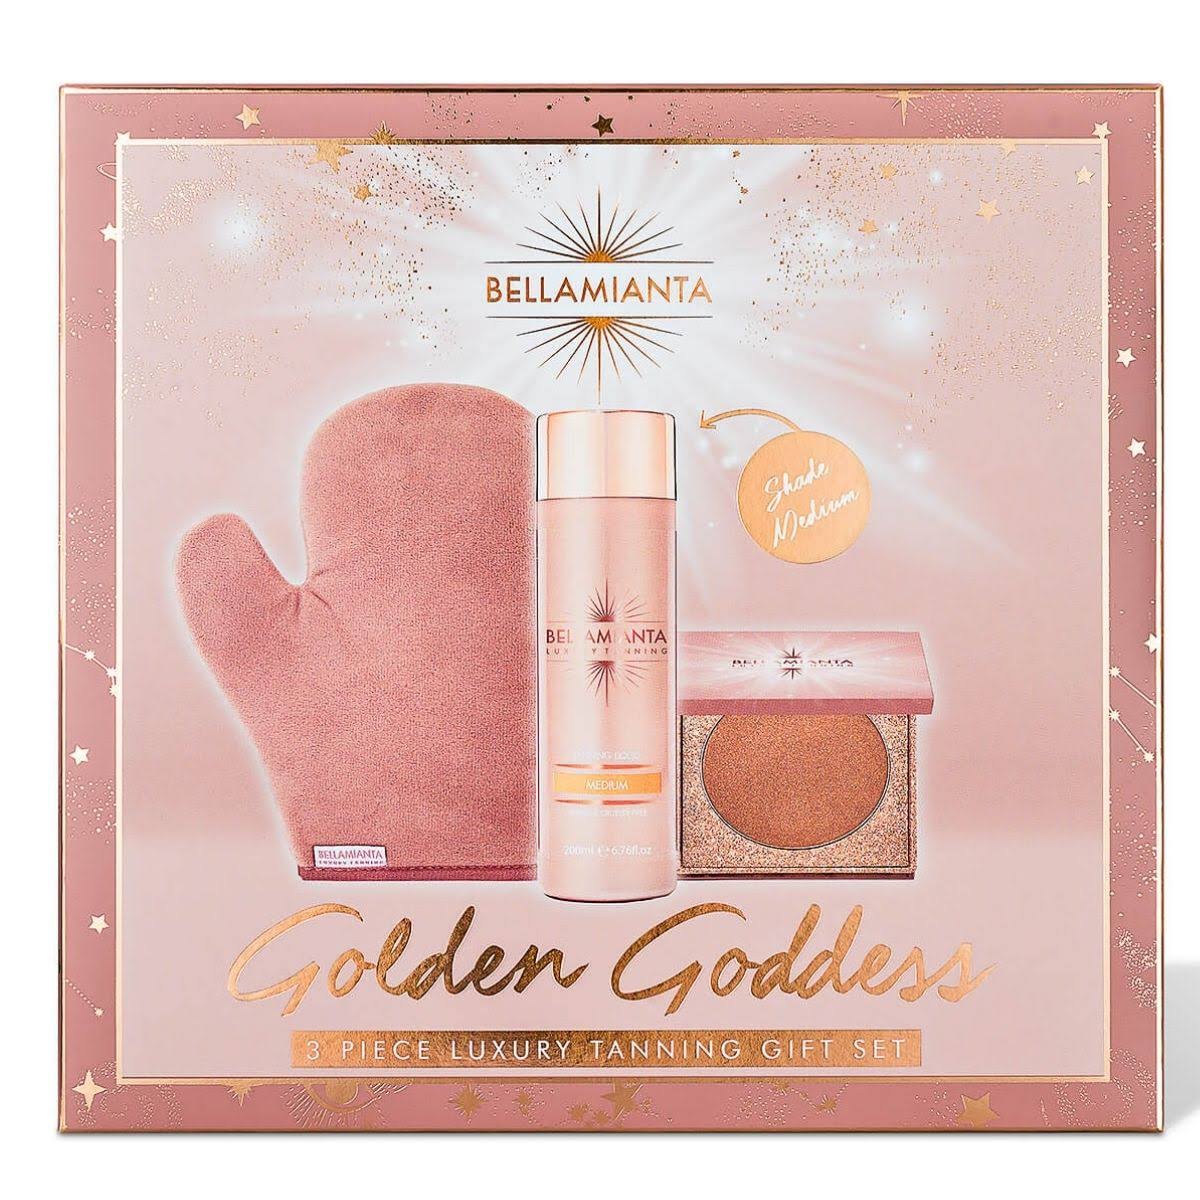 Bellamianta Golden Goddess Gift Set - Medium